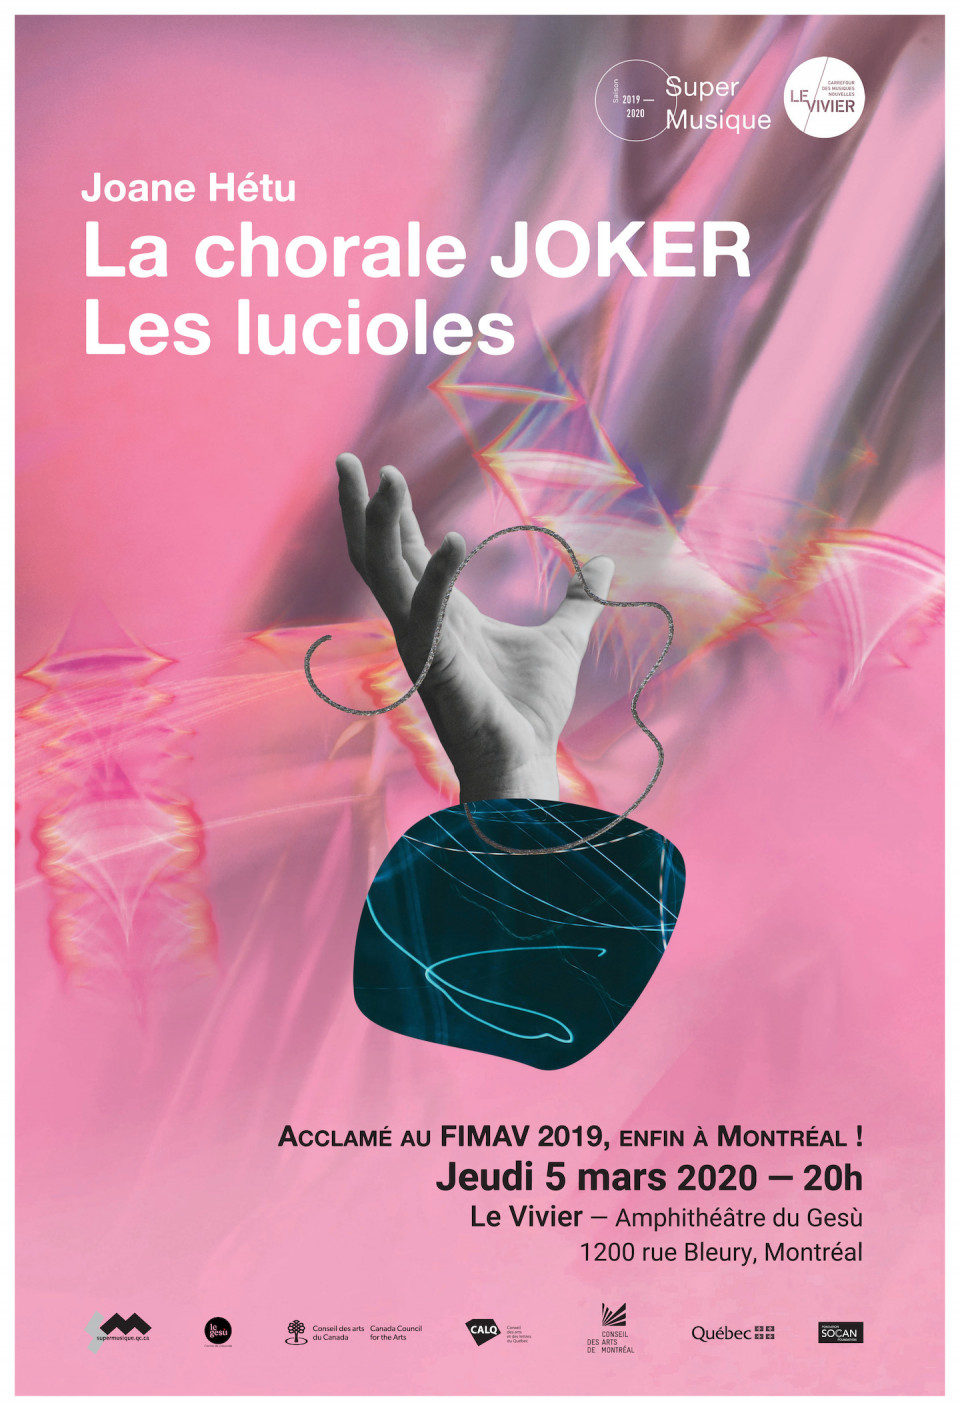 Joane Hétu: Chorale Joker — Les lucioles, Amphithéâtre – Le Gesù, Montréal (Québec), jeudi 5 mars 2020